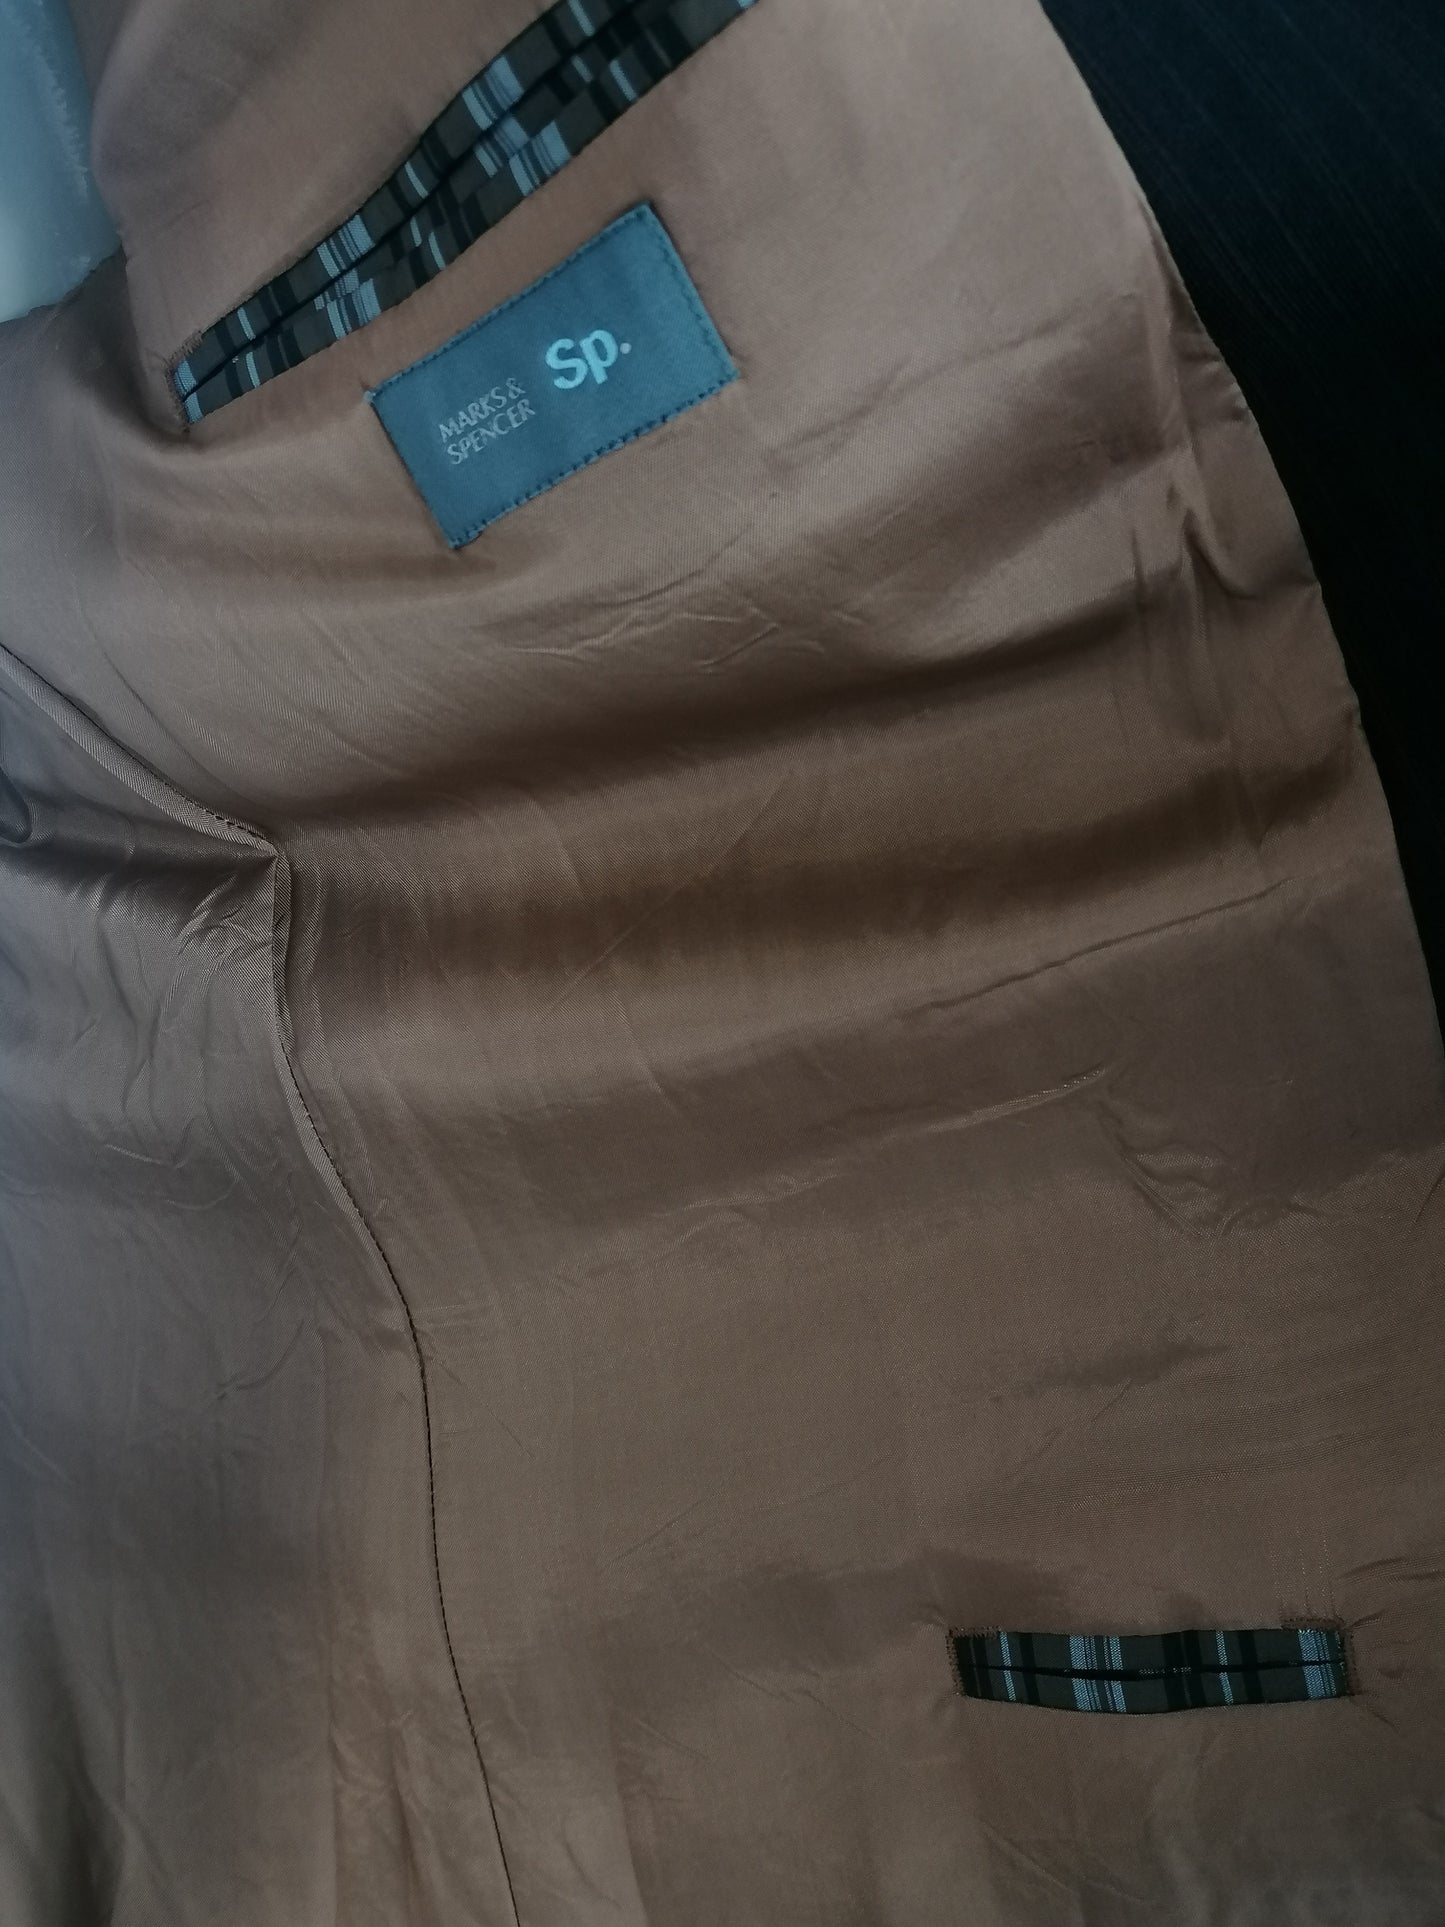 Marks & Spencer SP woolen jacket. Dark brown striped. Long model. Size 56 / XL.